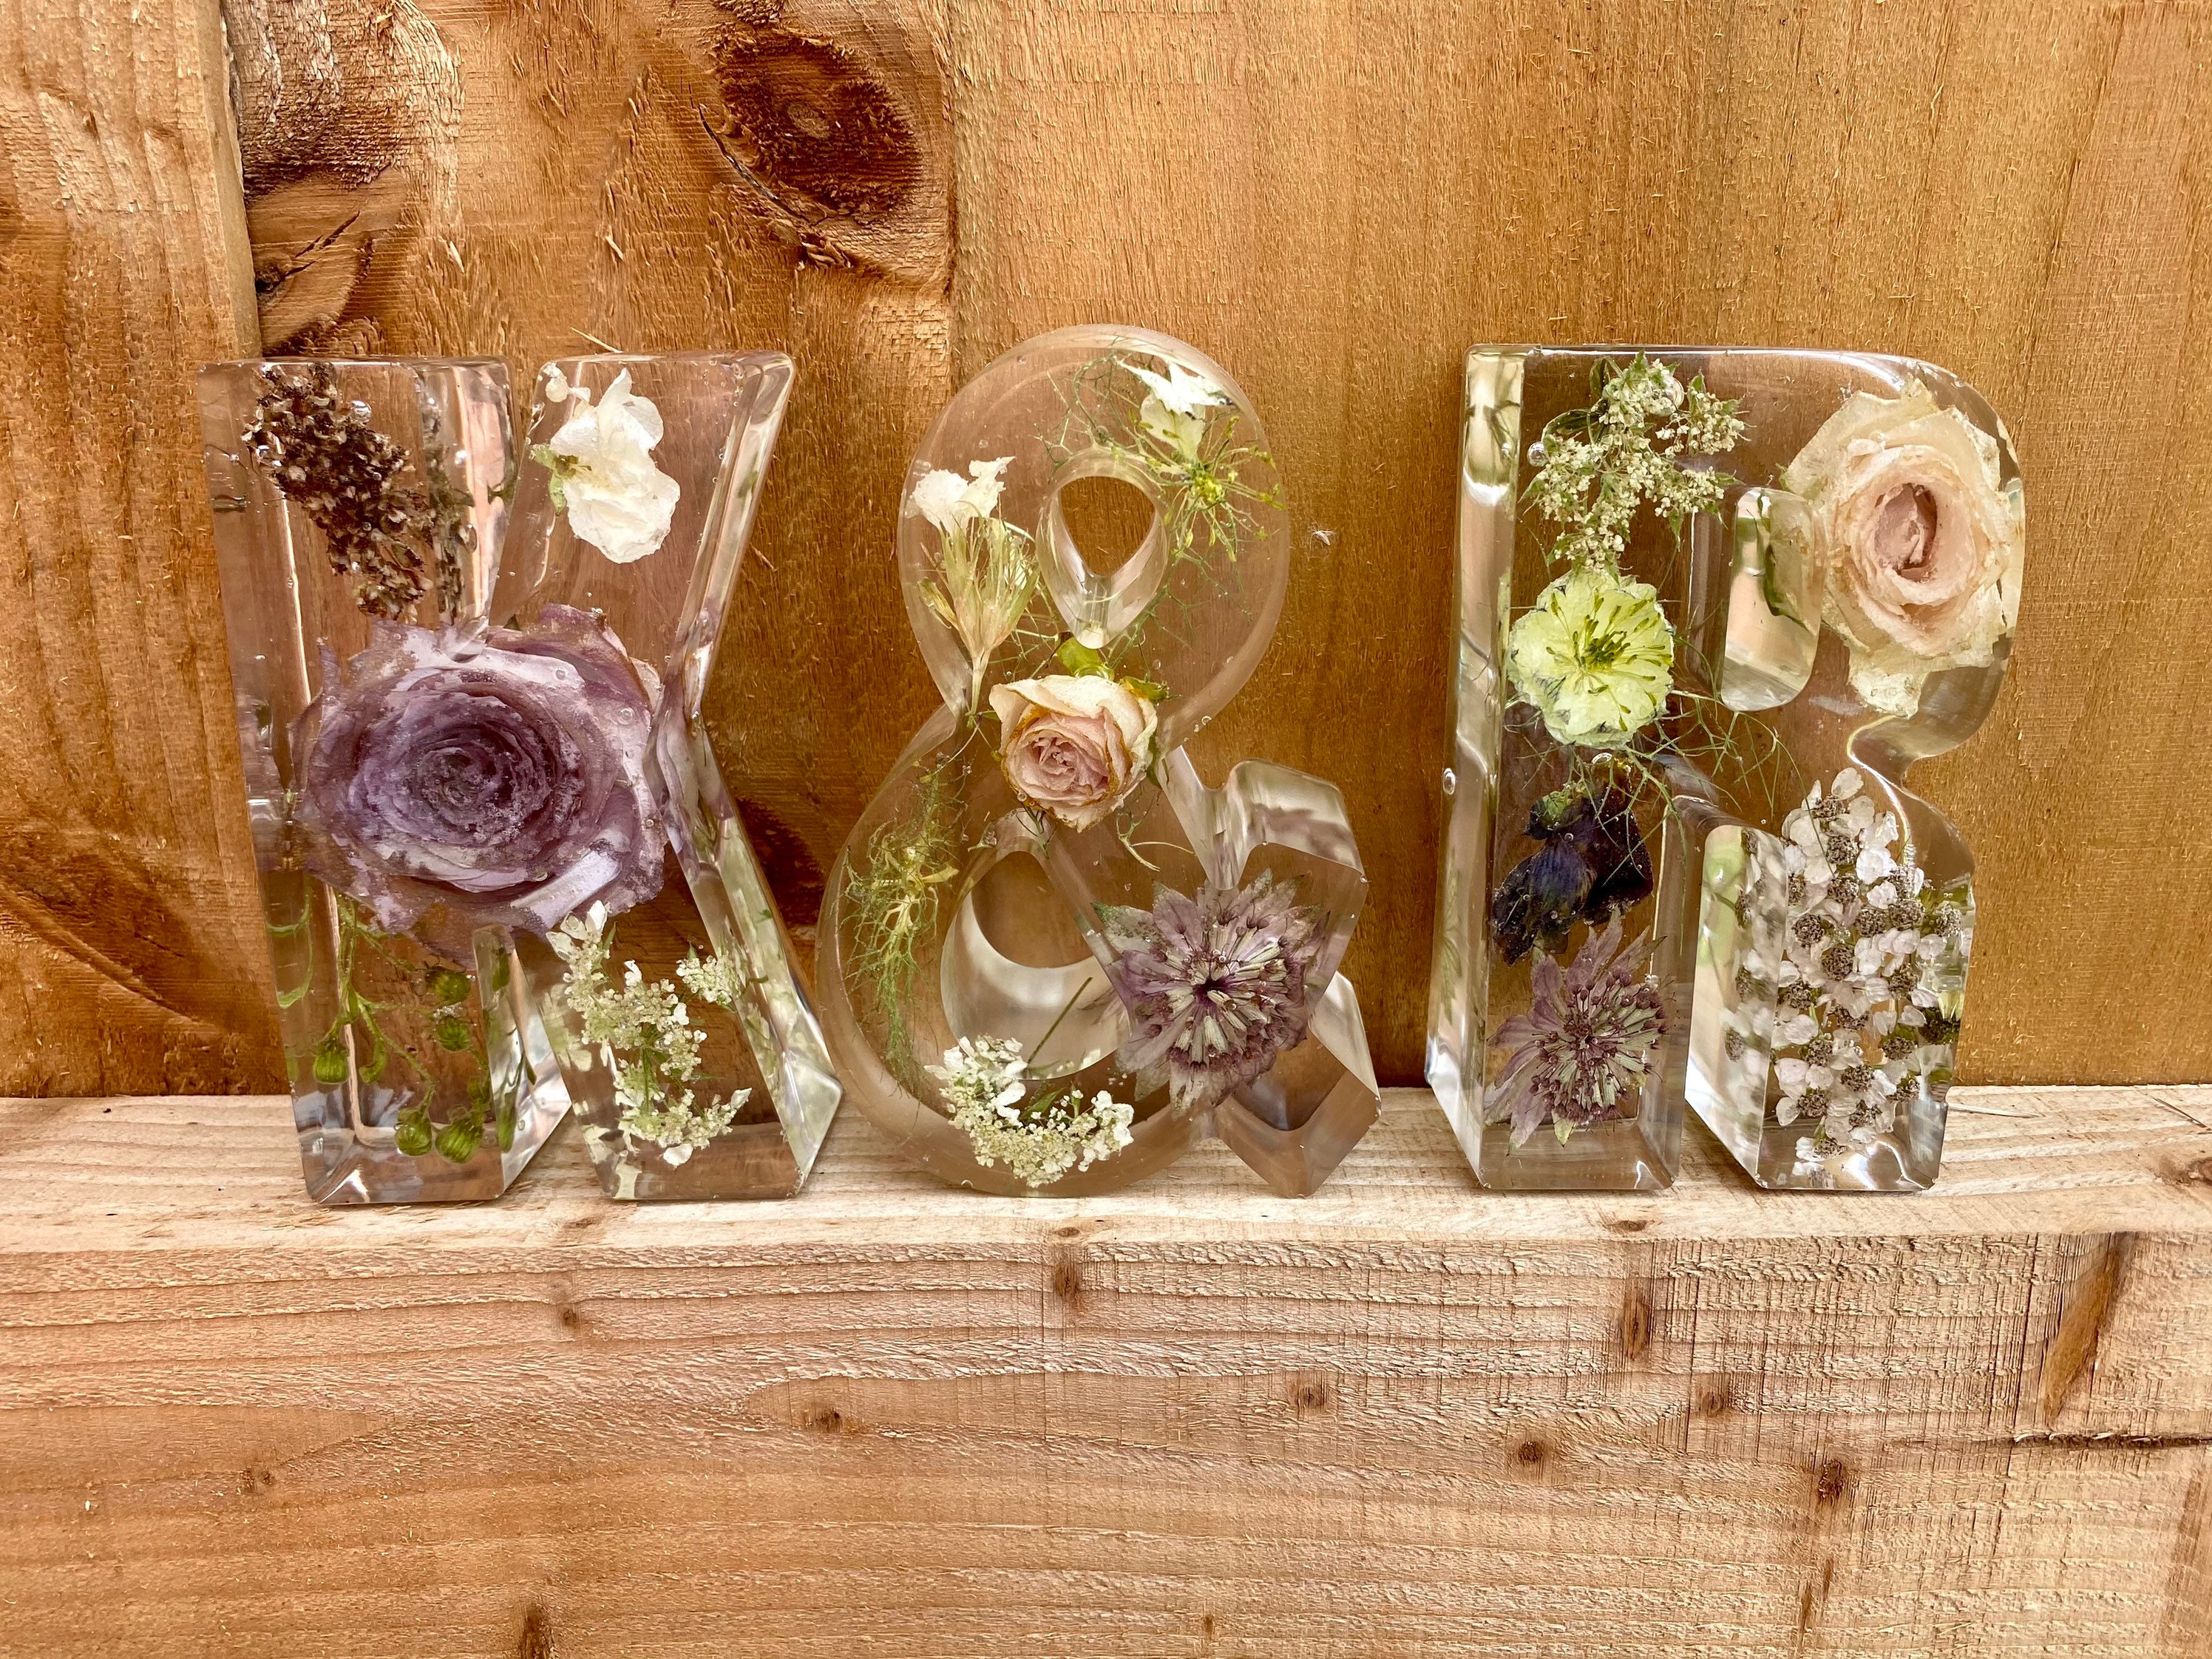 Wedding Flower Preservation Resin Letter Bundle / Wedding Keepsake